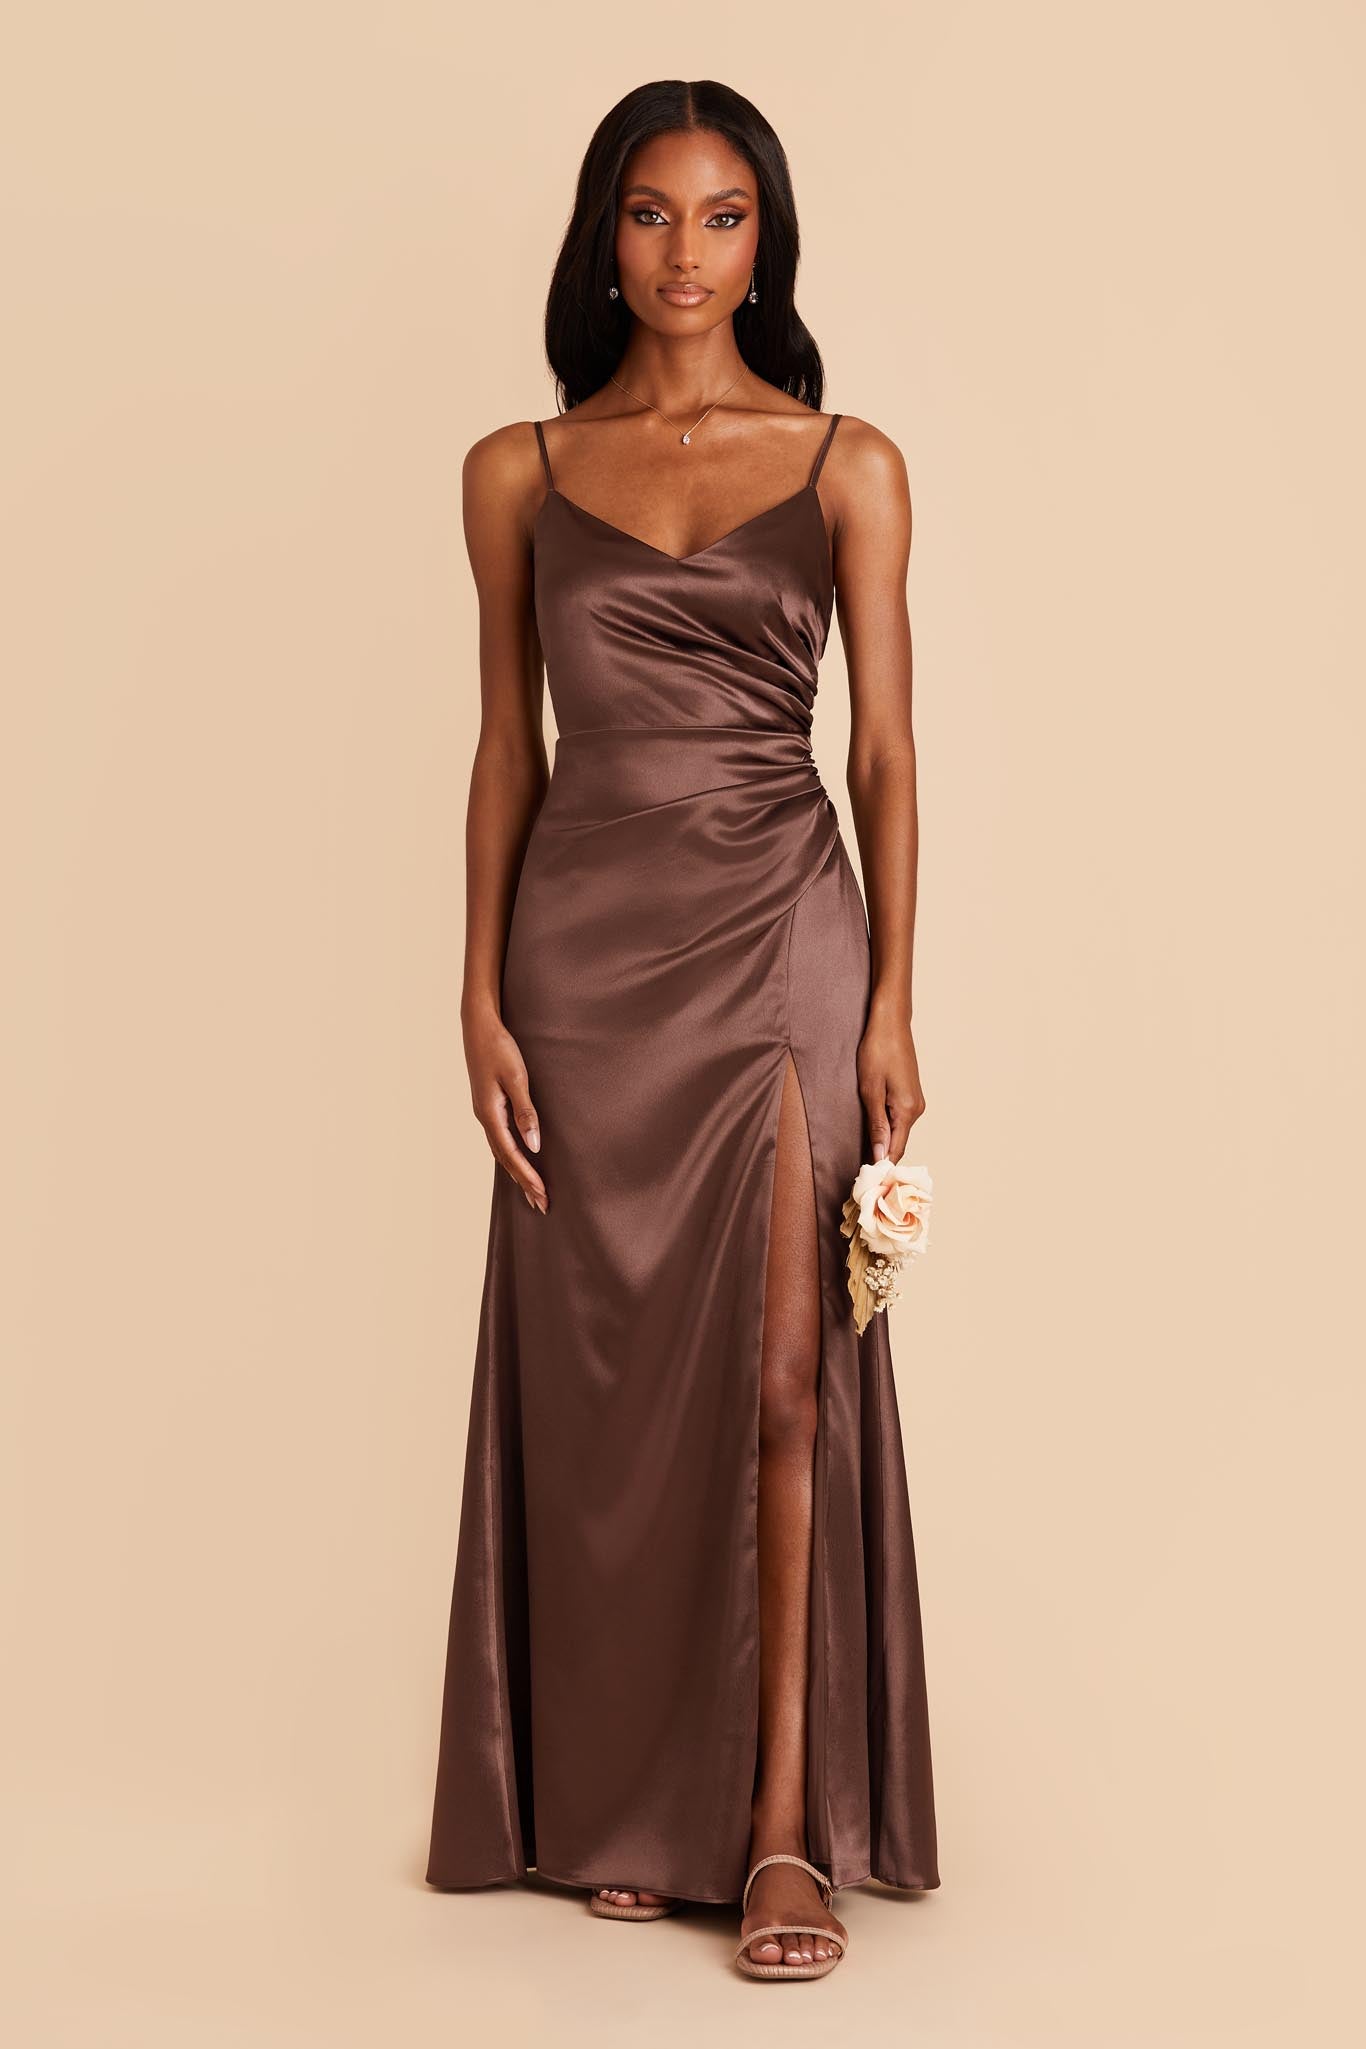 Chocolate Brown Catherine Satin Dress by Birdy Grey